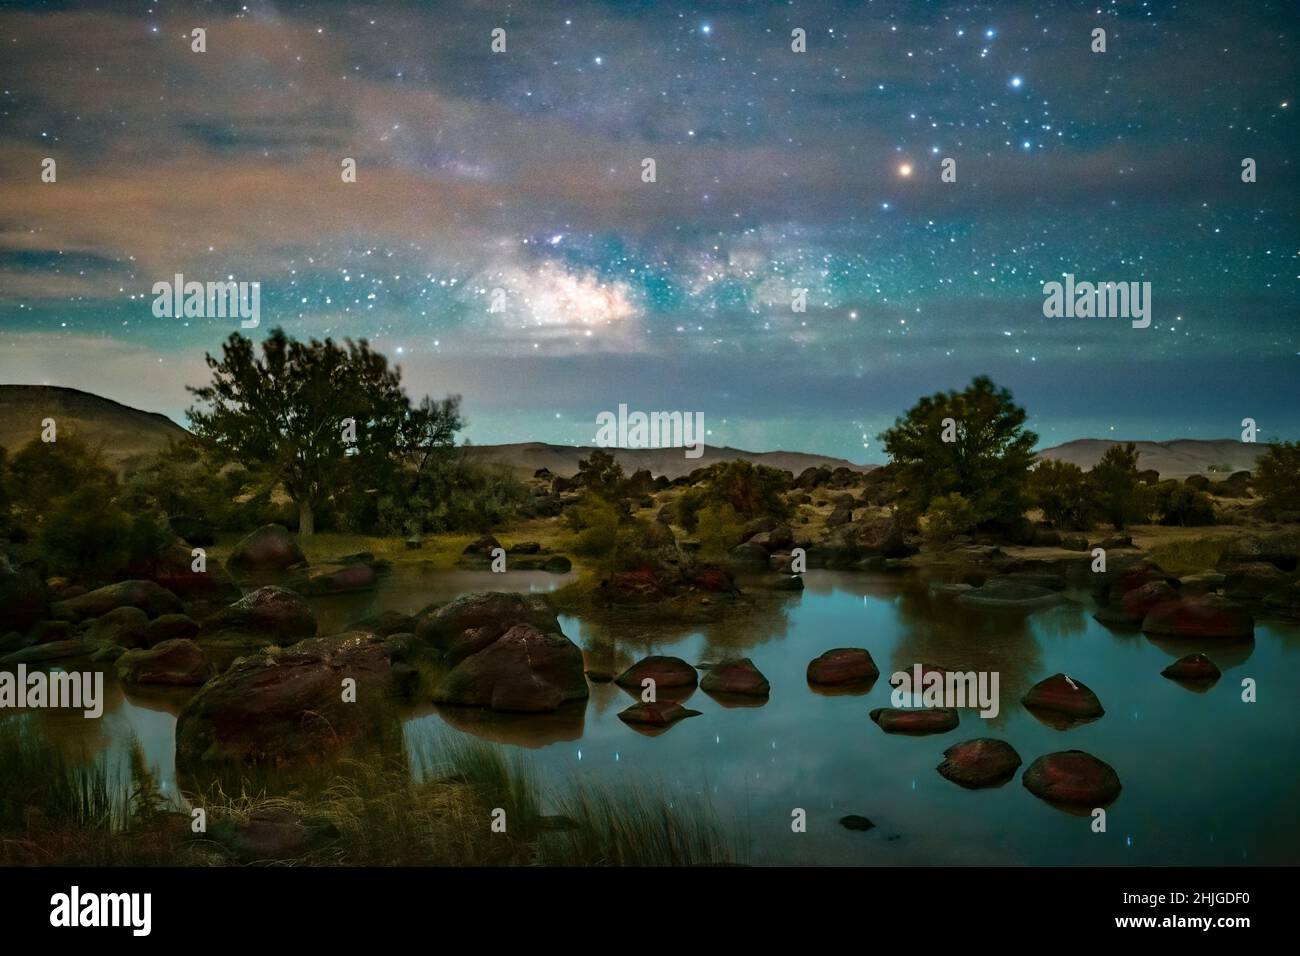 La photographie Astral au lac Halverson de l'Idaho a donné lieu à la production d'une image de paysage de rêve. Banque D'Images